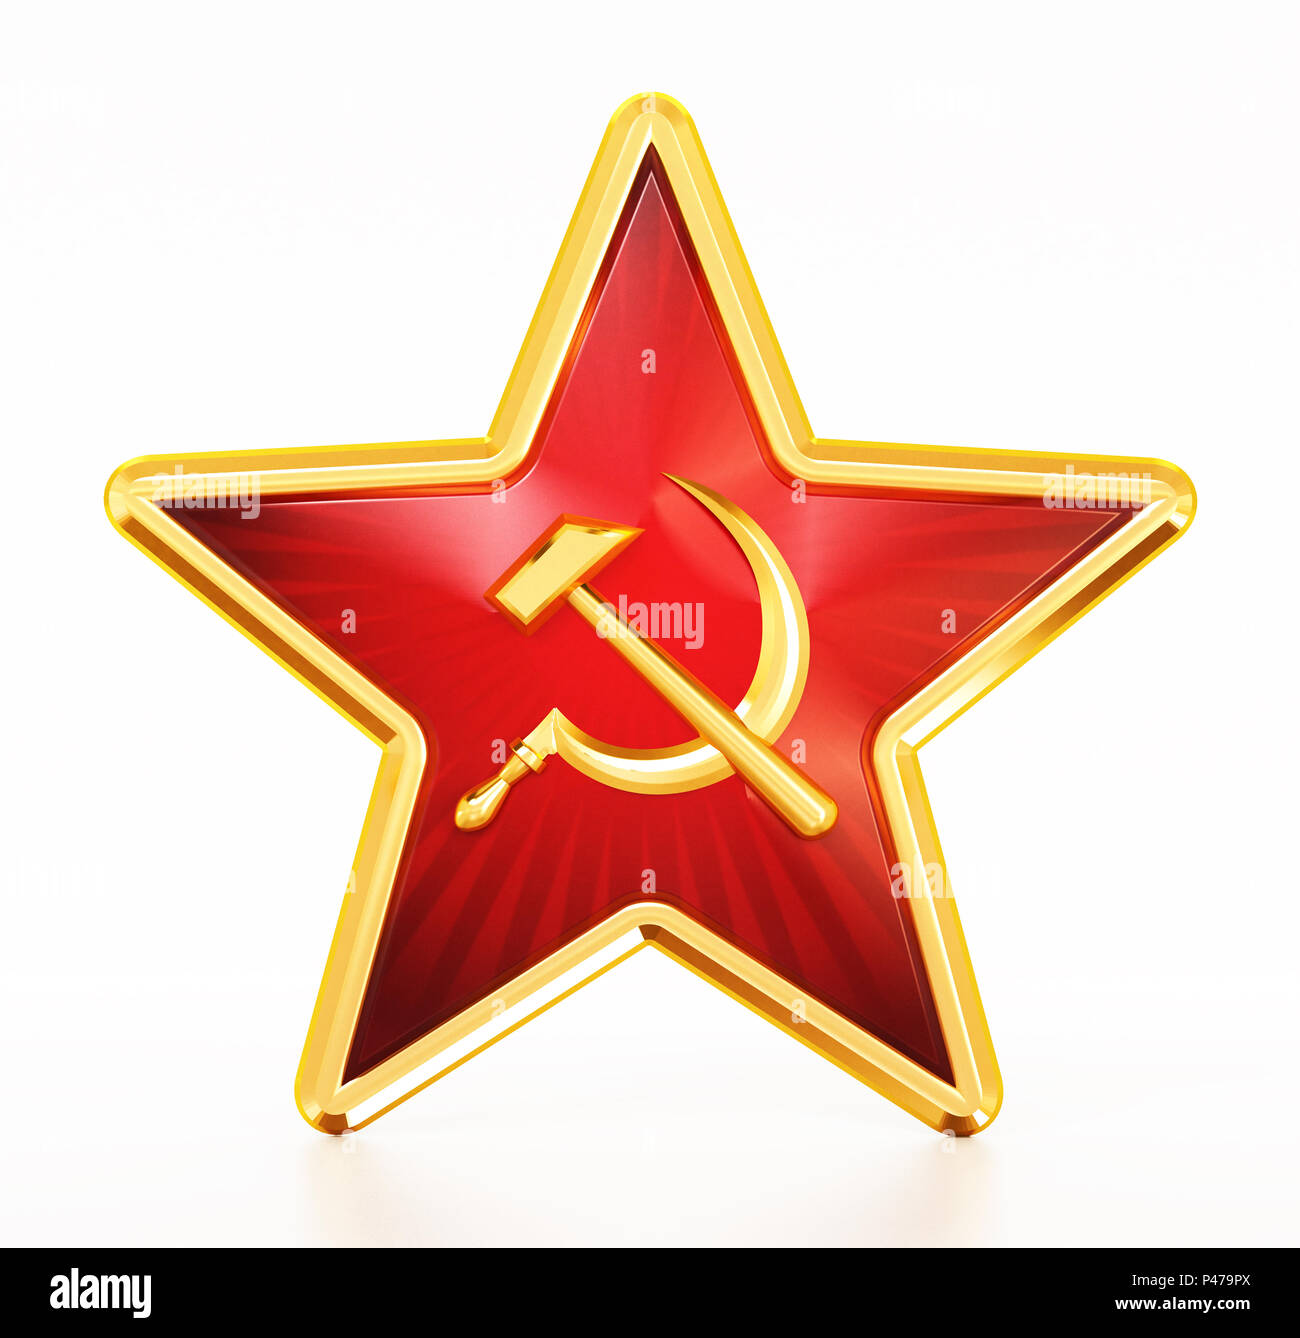 Kommunistische Symbole Hammer und Sichel auf roten Stern. 3D-Darstellung  Stockfotografie - Alamy